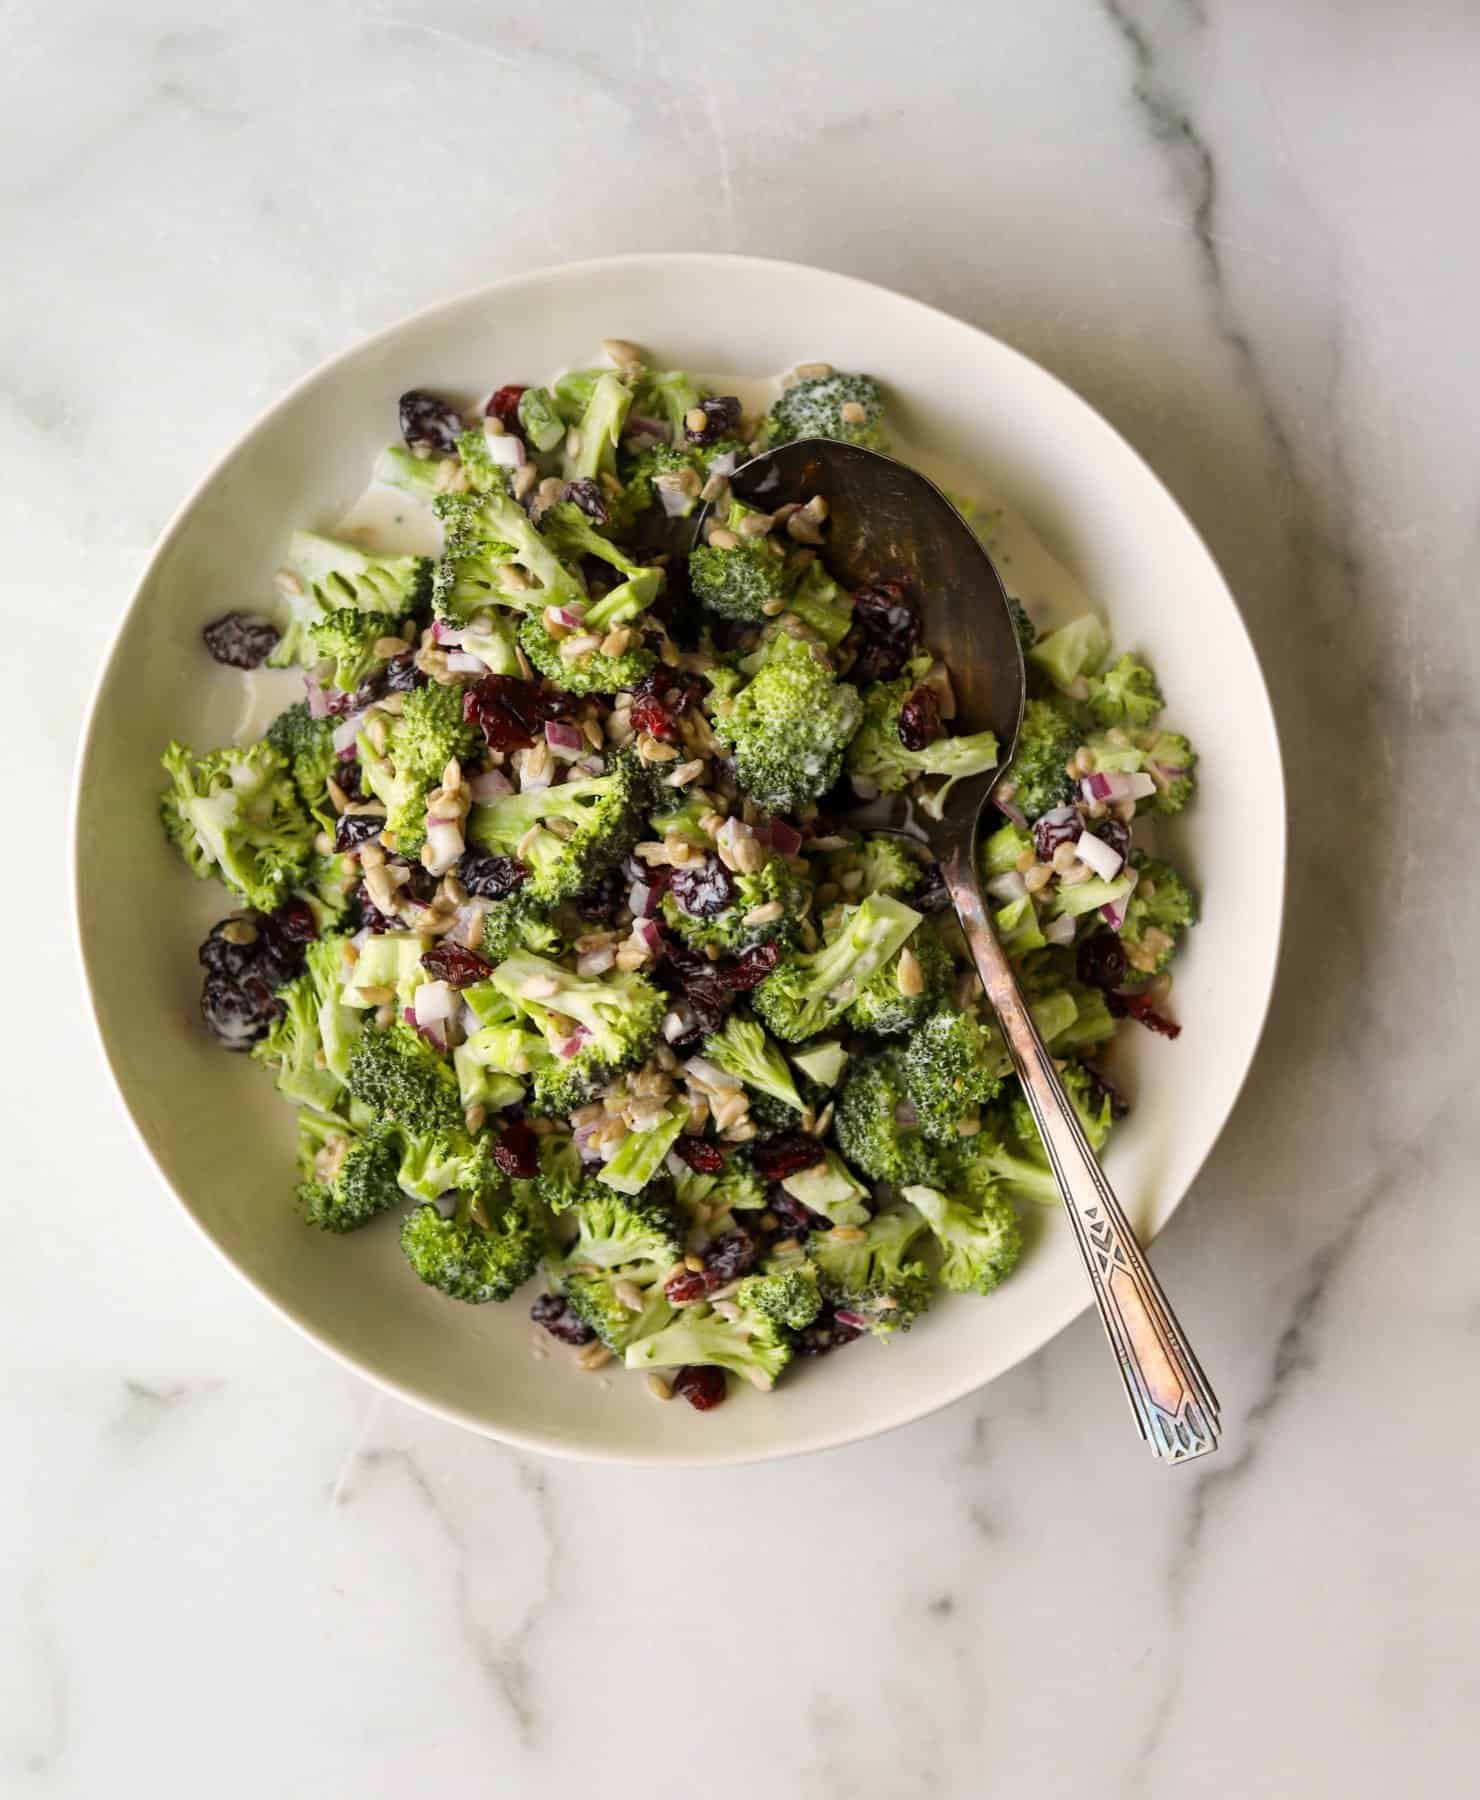 Broccoli salad in a white bowl